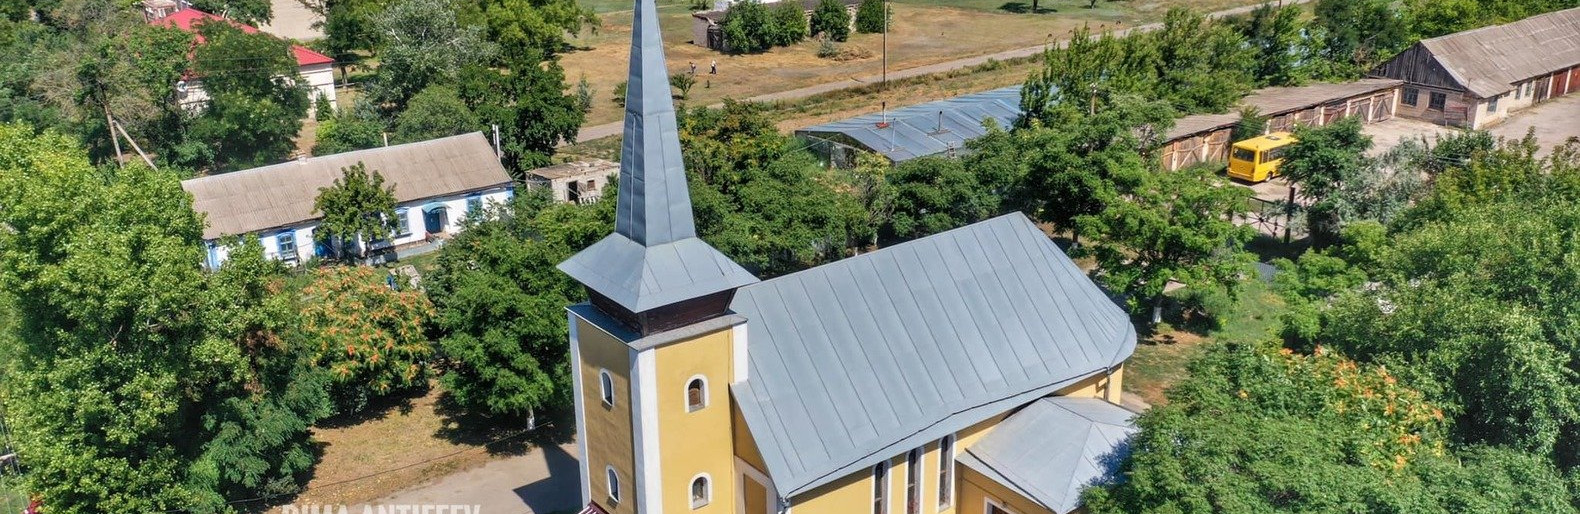 Село в Запорожской области переименуют в Чехоград: подробности